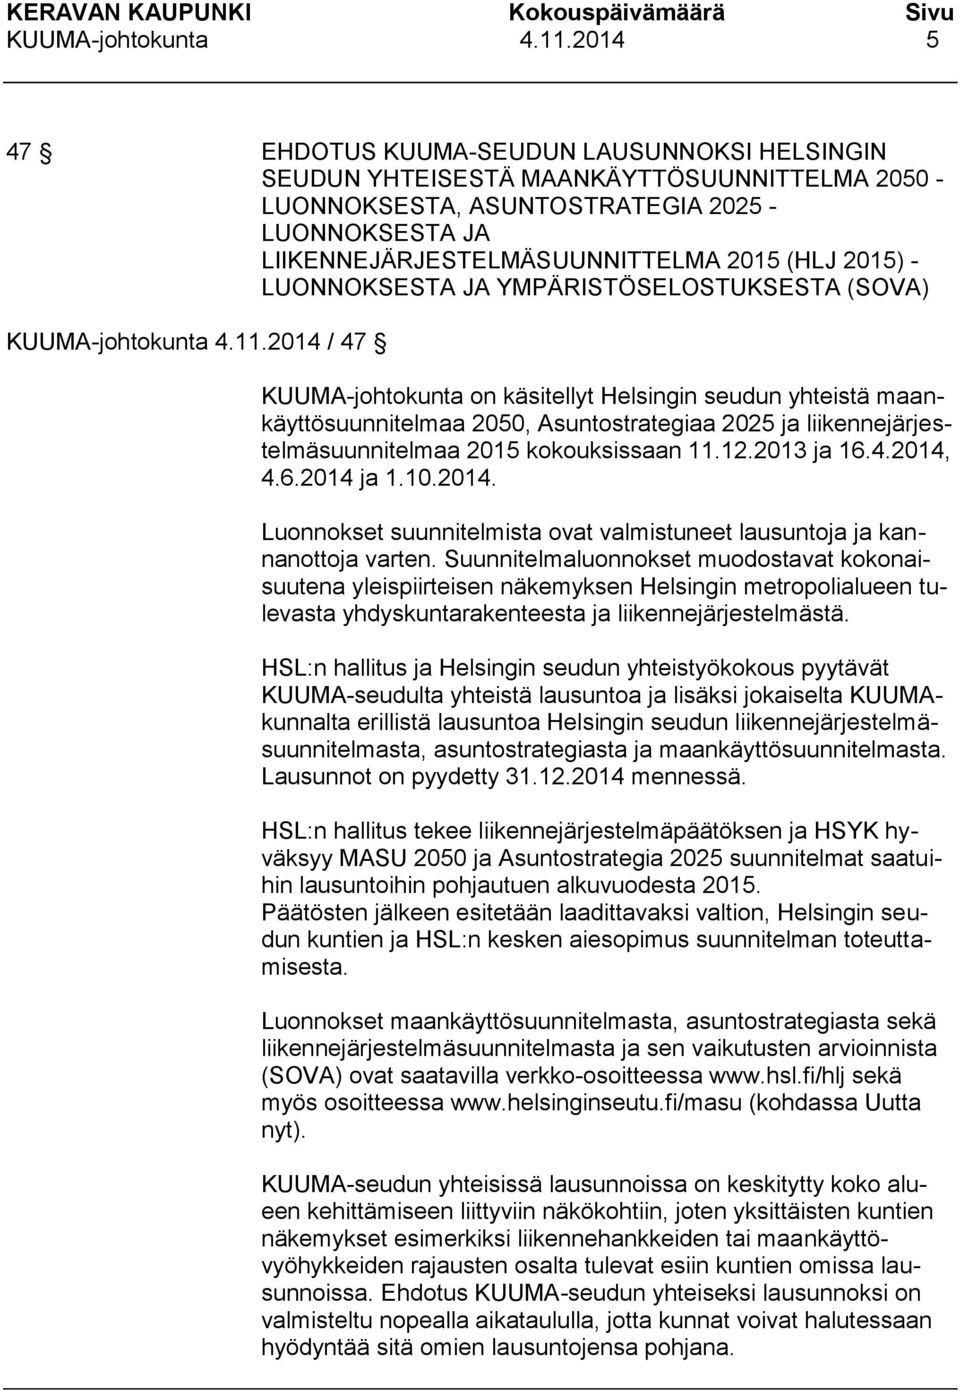 2015) - LUONNOKSESTA JA YMPÄRISTÖSELOSTUKSESTA (SOVA) 2014 / 47 KUUMA-johtokunta on käsitellyt Helsingin seudun yhteistä maankäyttösuunnitelmaa 2050, Asuntostrategiaa 2025 ja